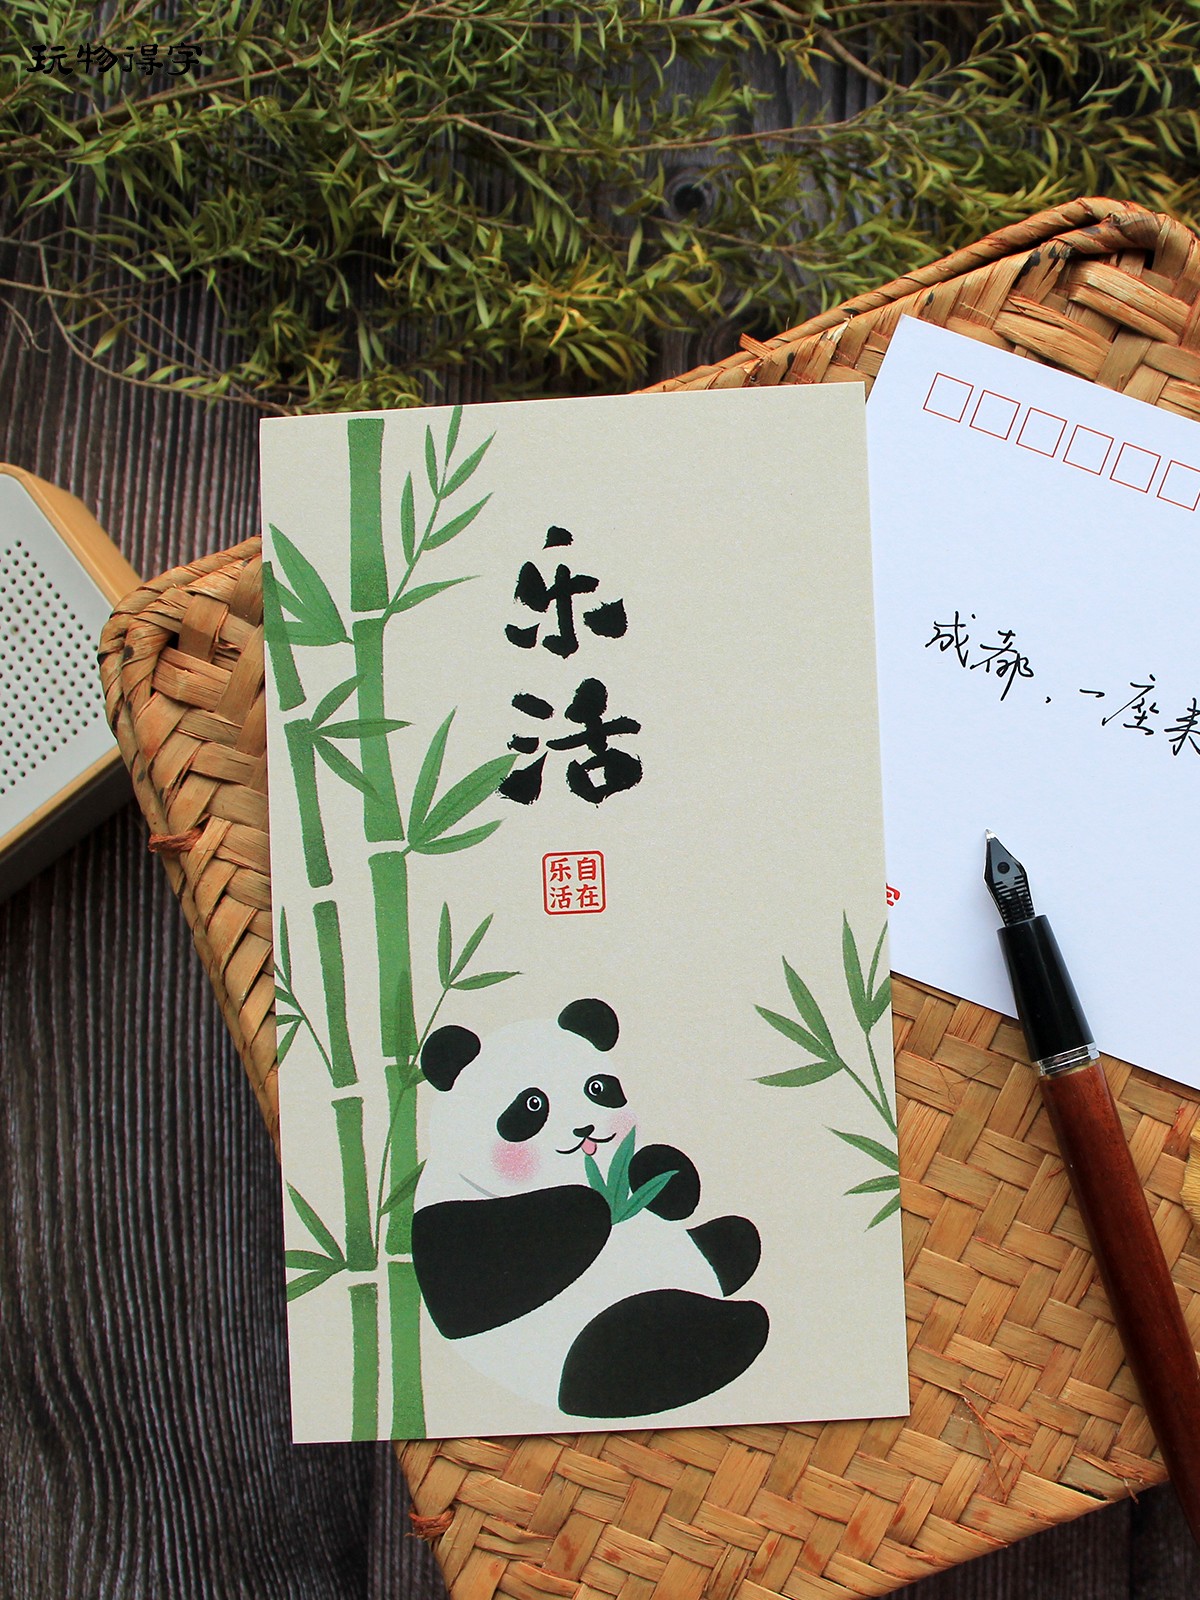 玩物得字原创手绘明信片成都宽窄都江堰大熊猫乐活自在旅行纪念片